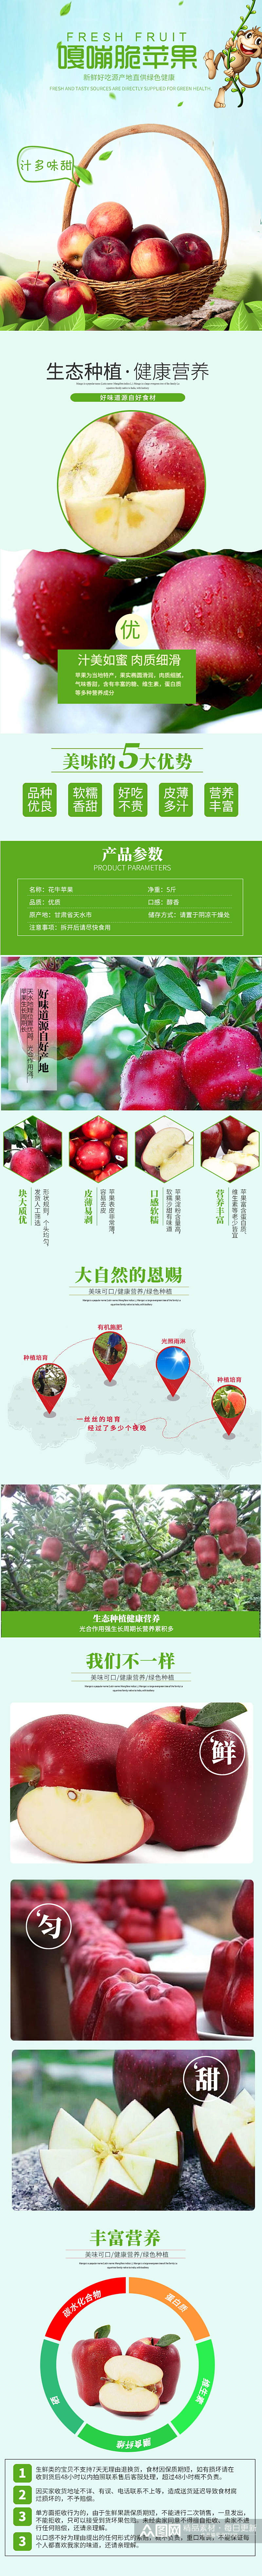 小清新风格食品水果生鲜苹果蛇果详情页素材